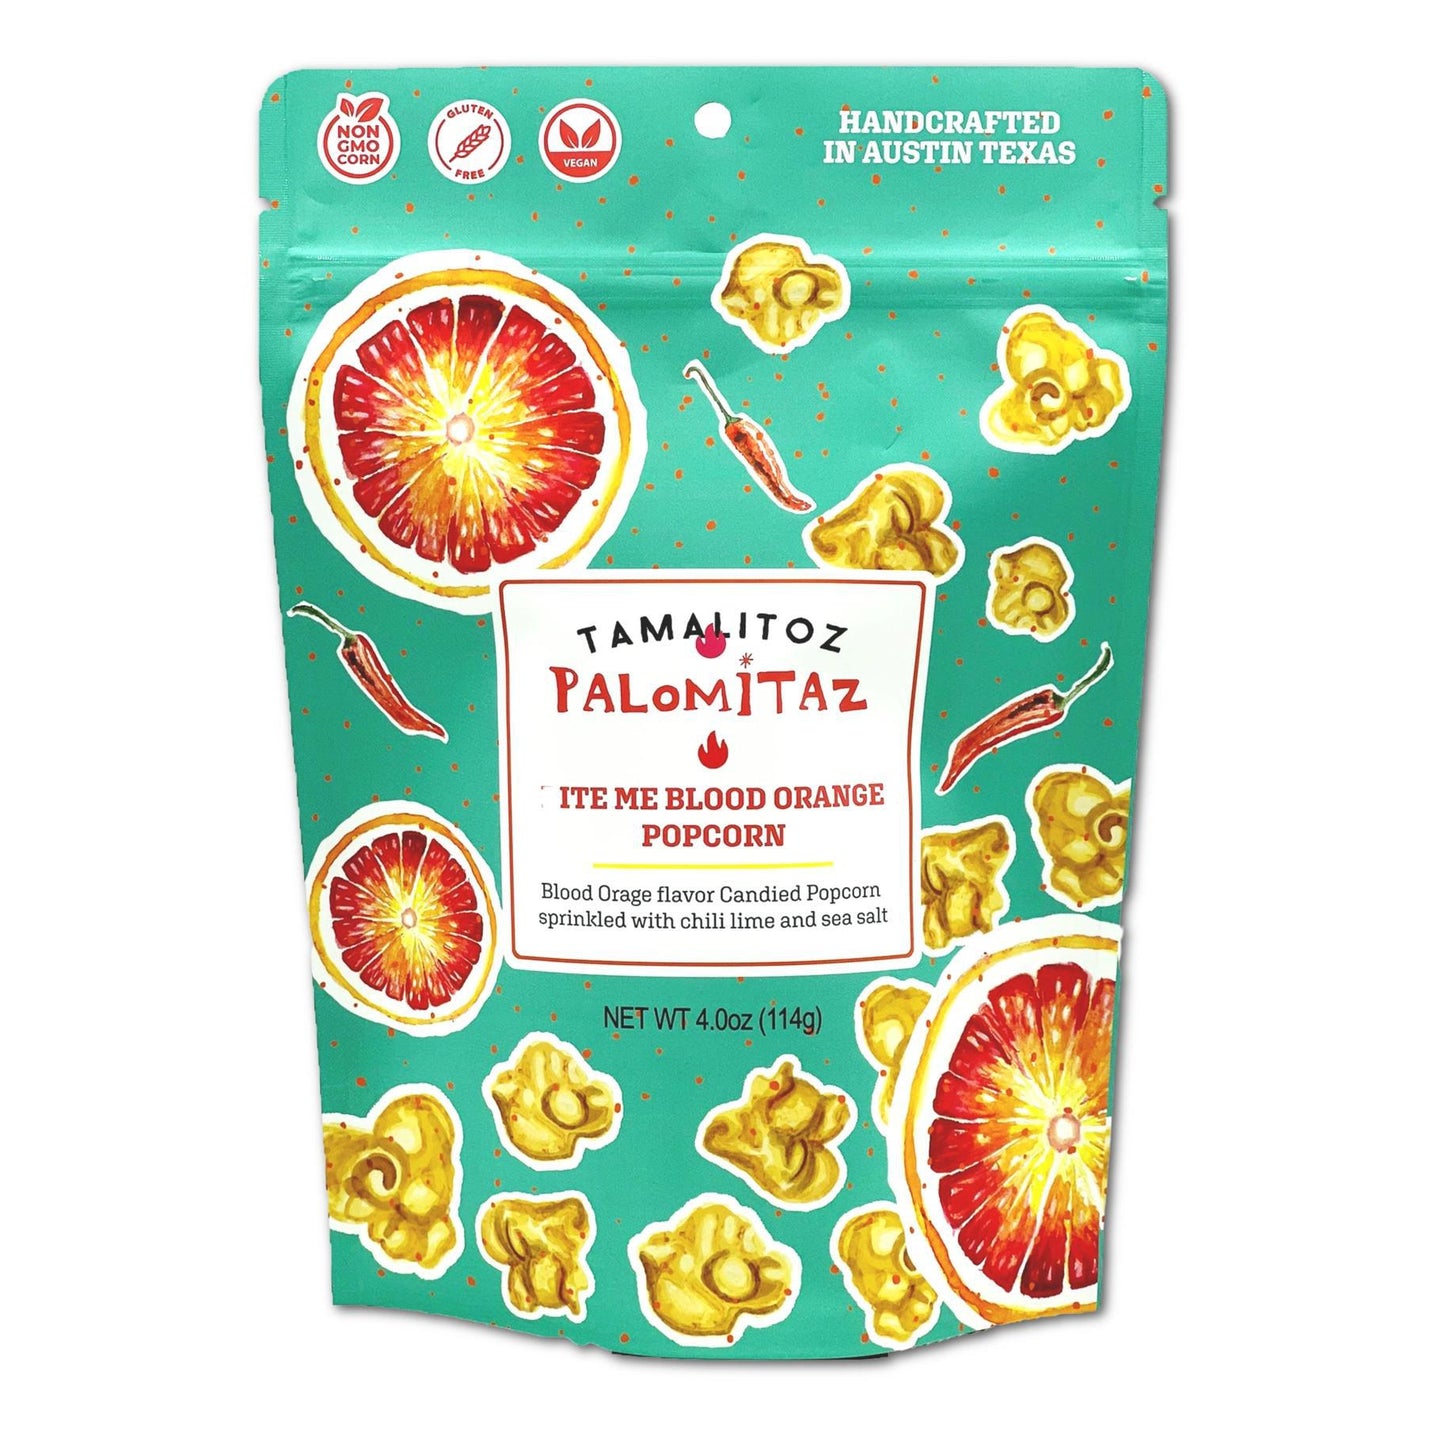 Palomitaz - Blood Orange Popcorn